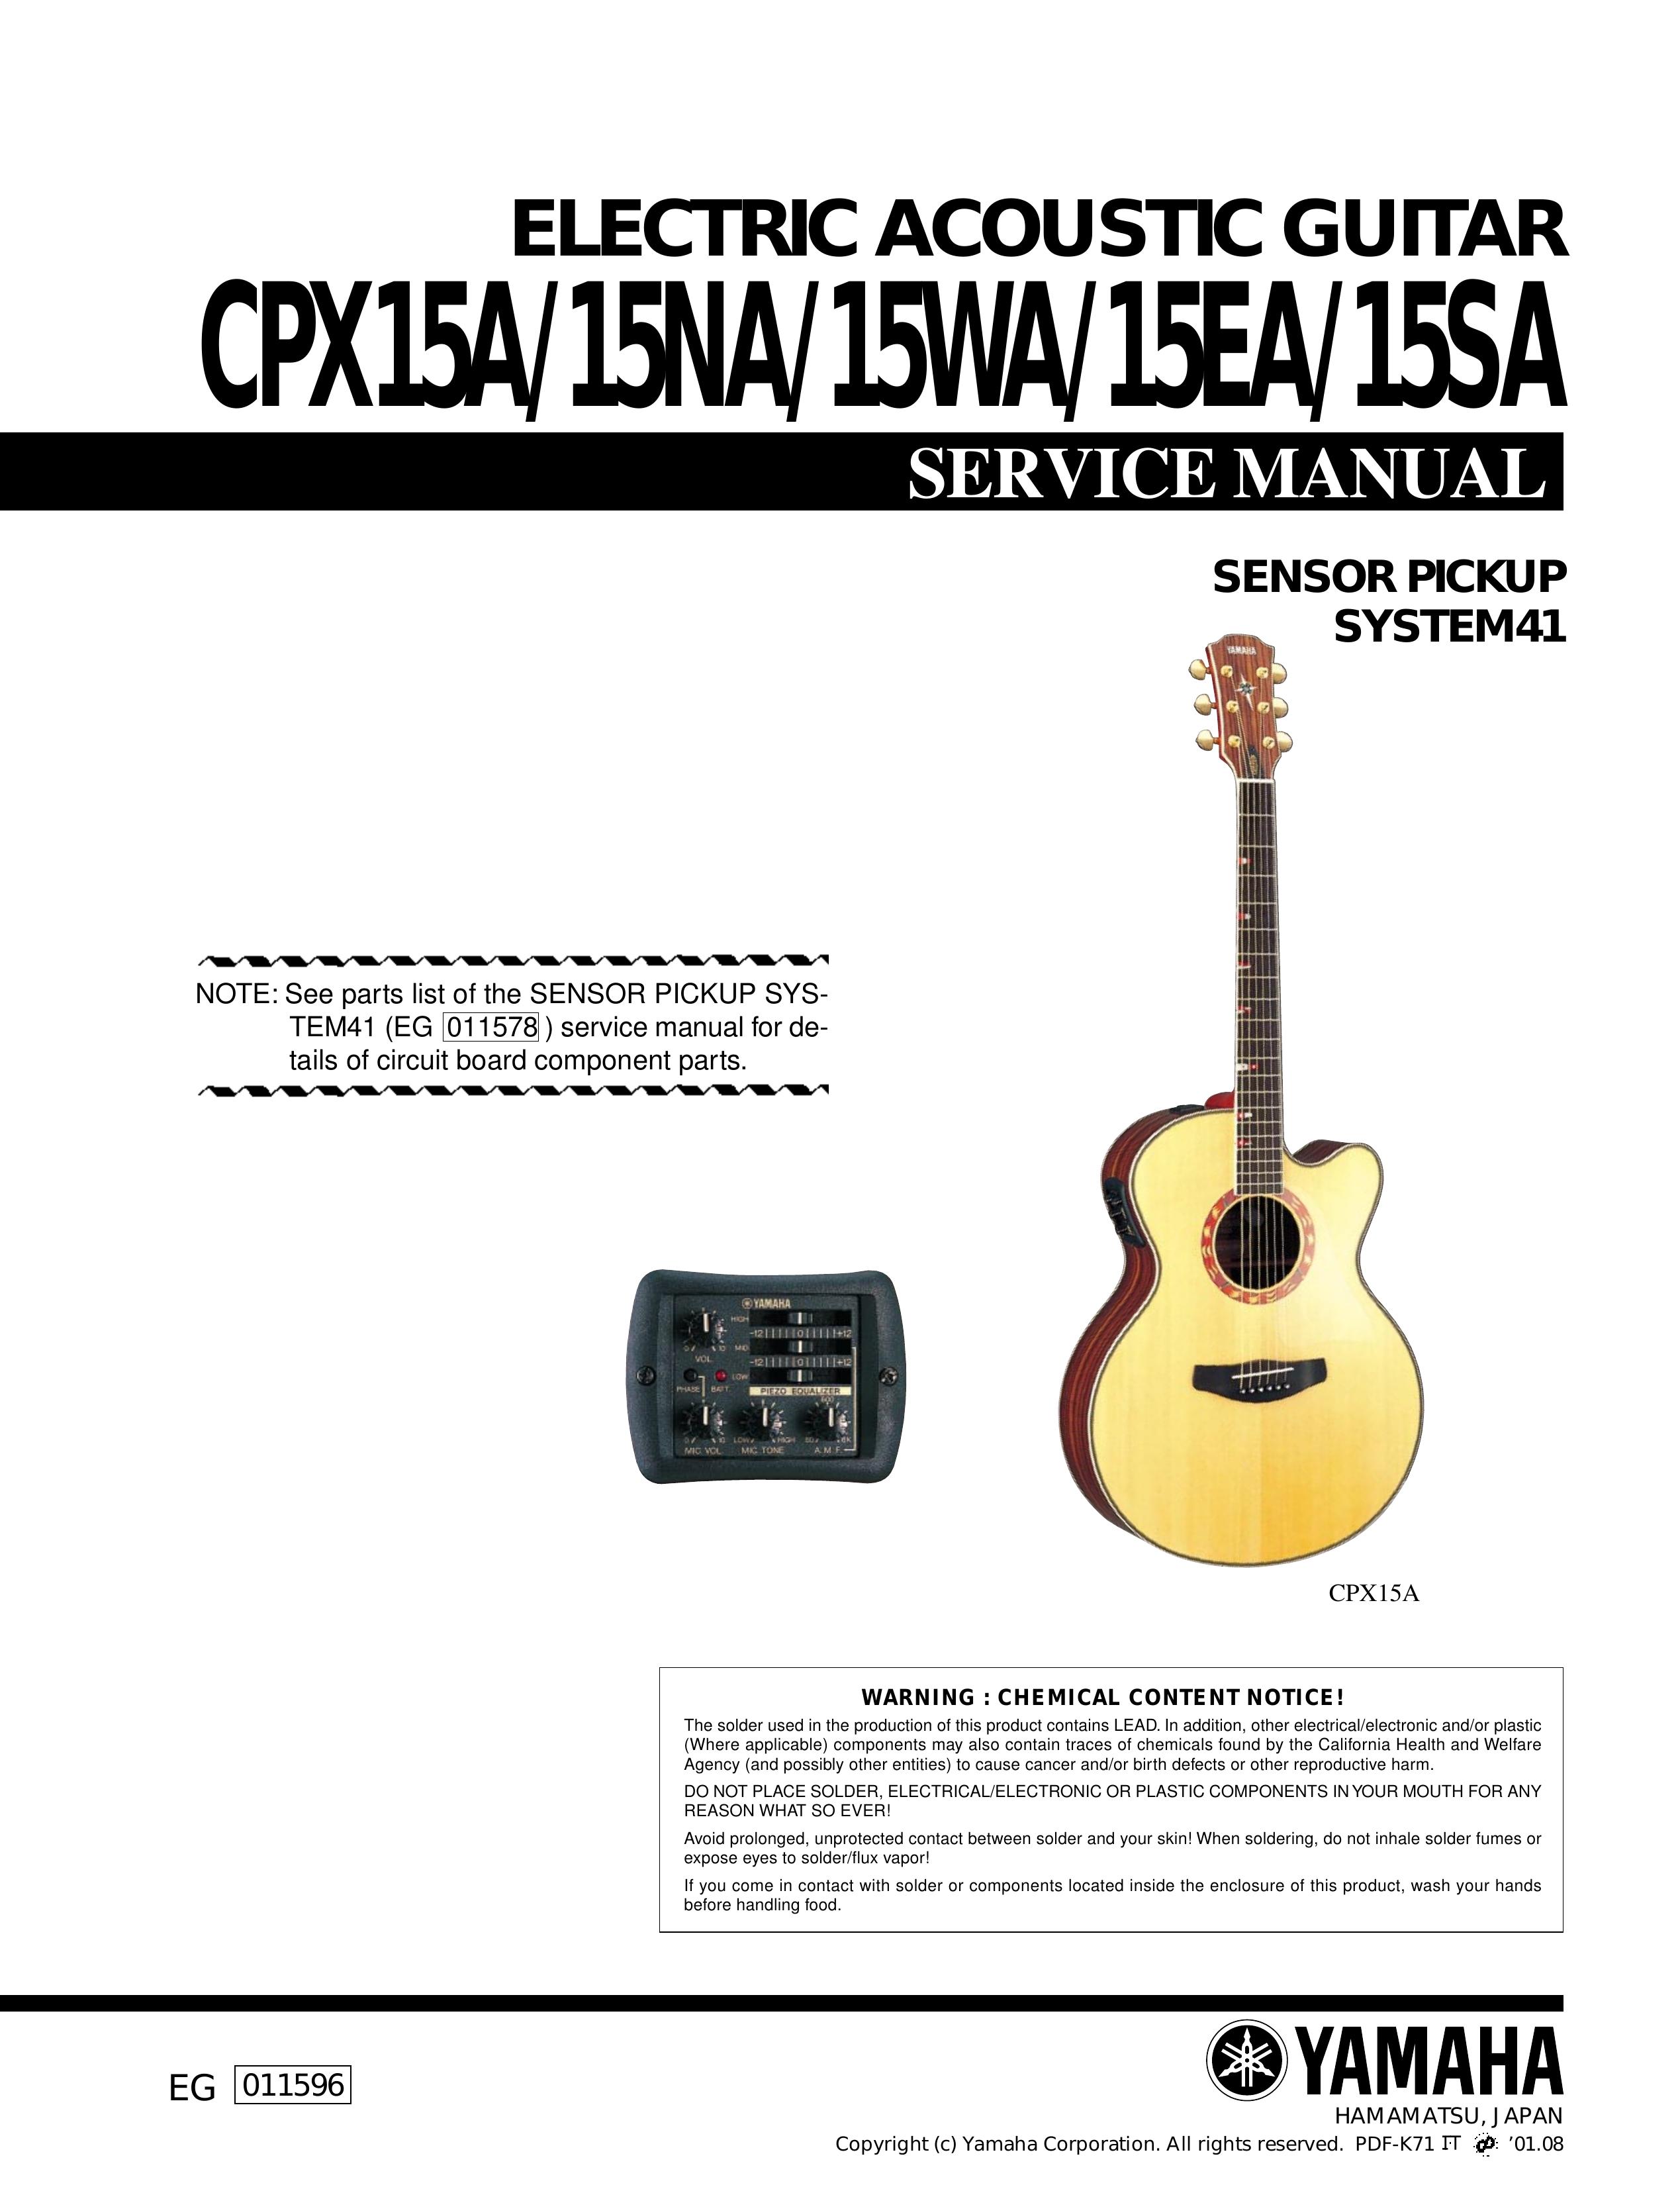 Yamaha electric aocustic guitar Guitar User Manual